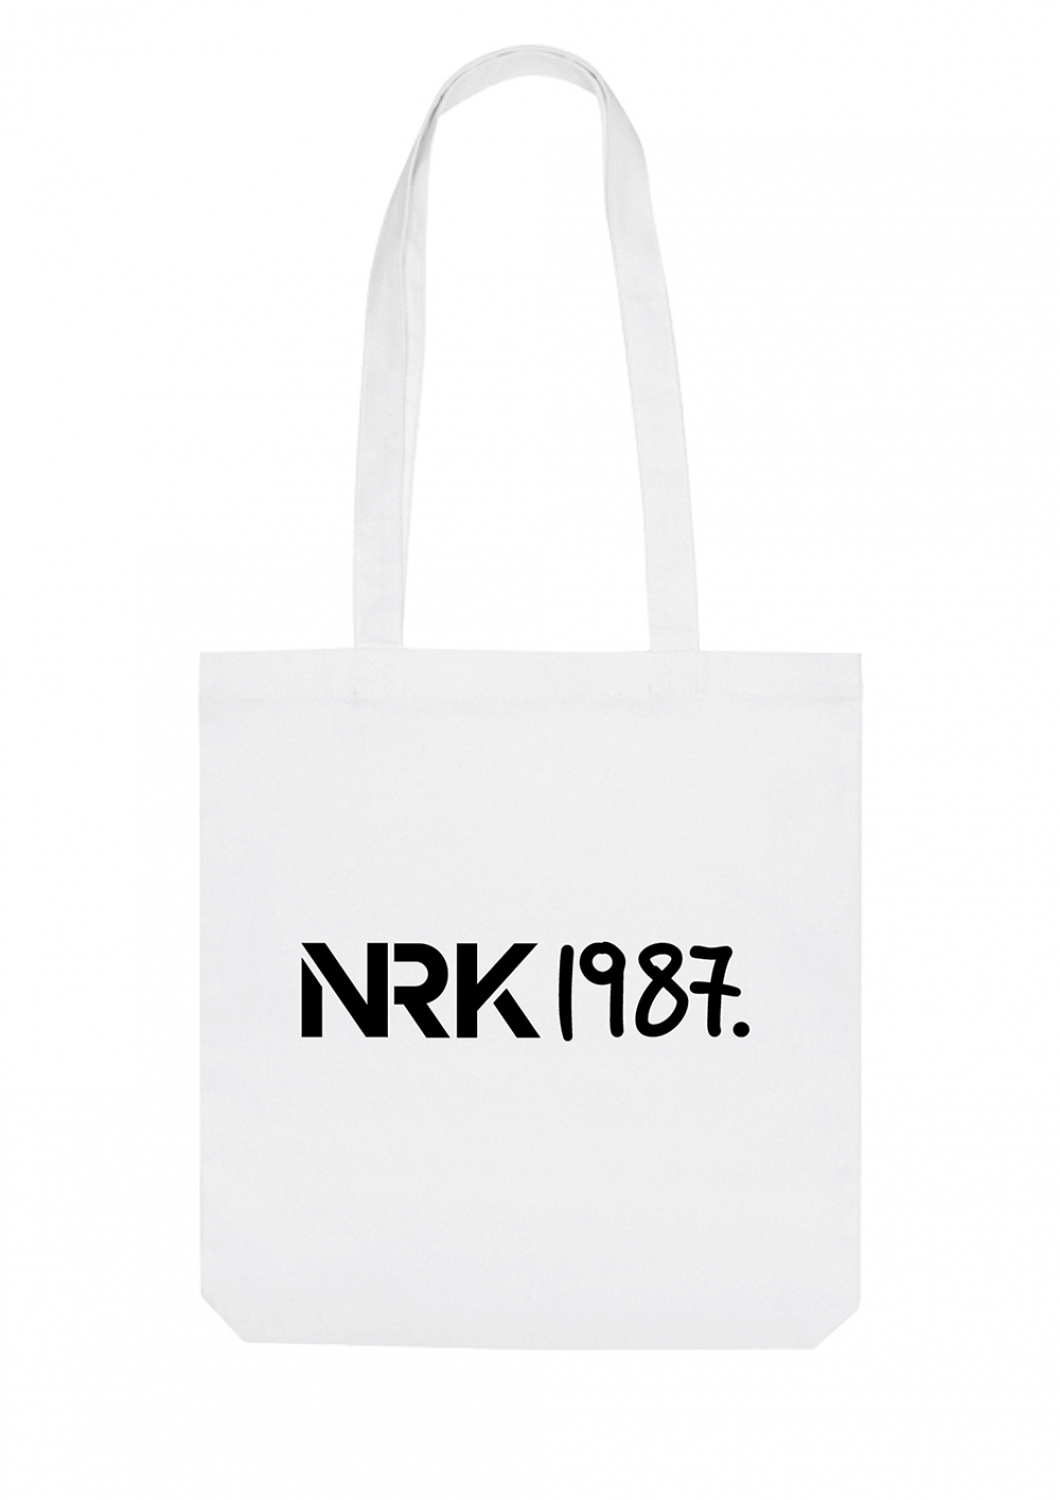 Tasche NRK1987.